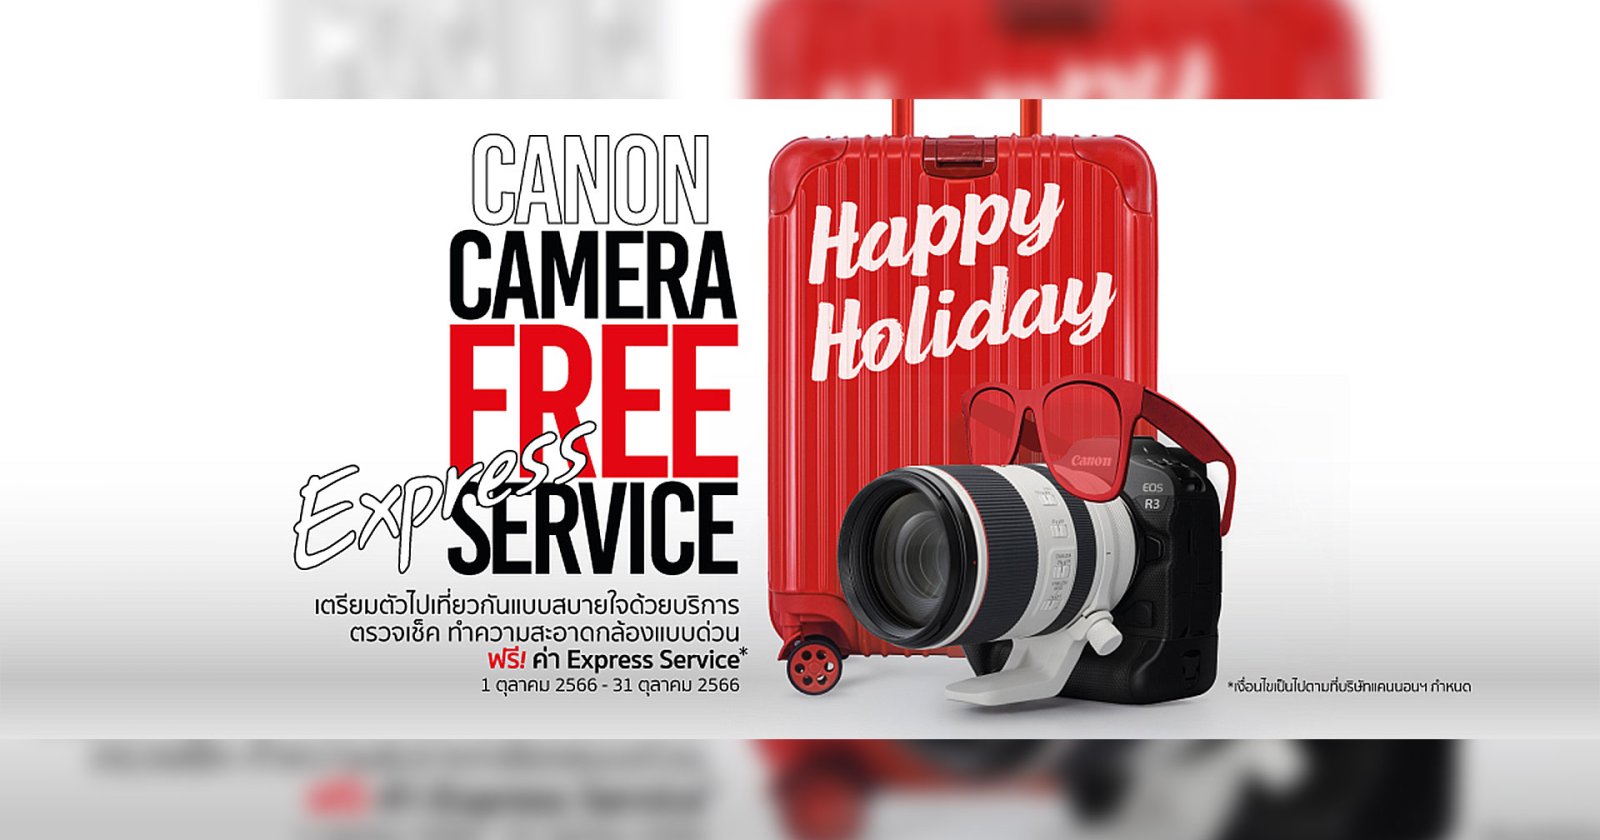 แคนนอน จัดแคมเปญ “Happy Holiday” รับหยุดยาวฟรี! บริการตรวจเช็กทำความสะอาดกล้องด่วน พร้อมพกกล้องออกทริปปลายปี